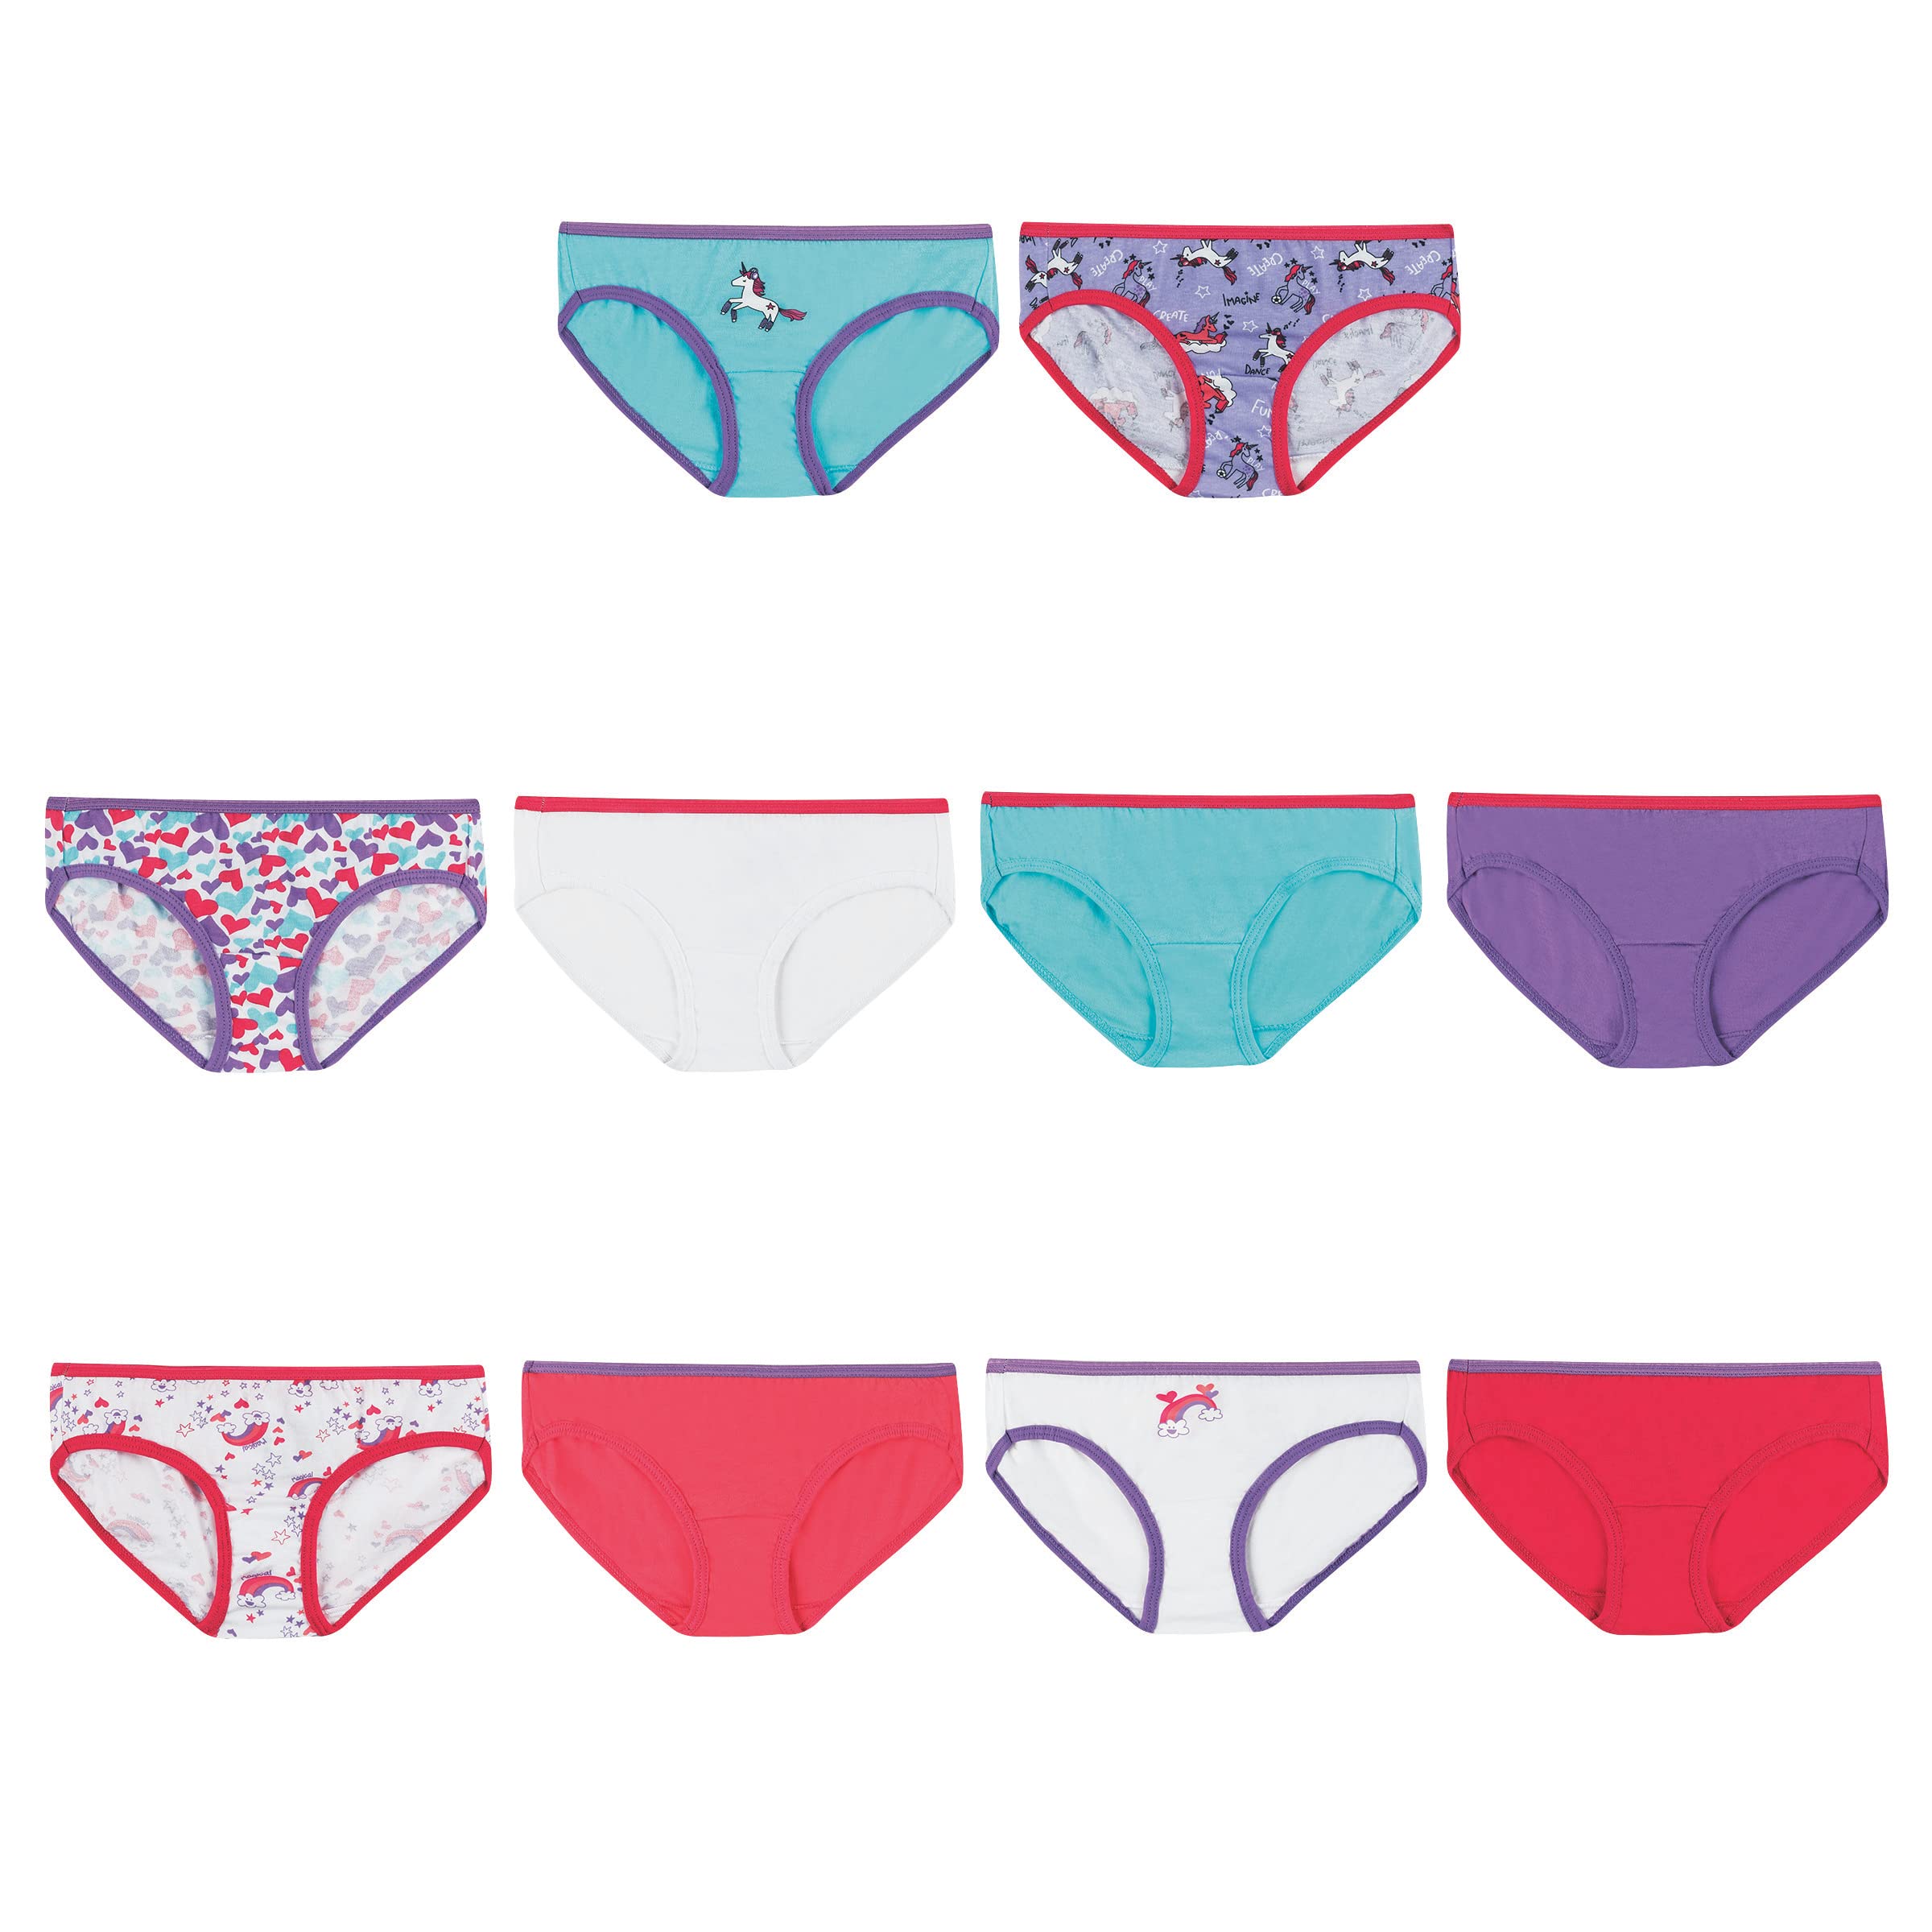 Buy Hanes Girls and Toddler Underwear, Cotton Knit Tagless Brief